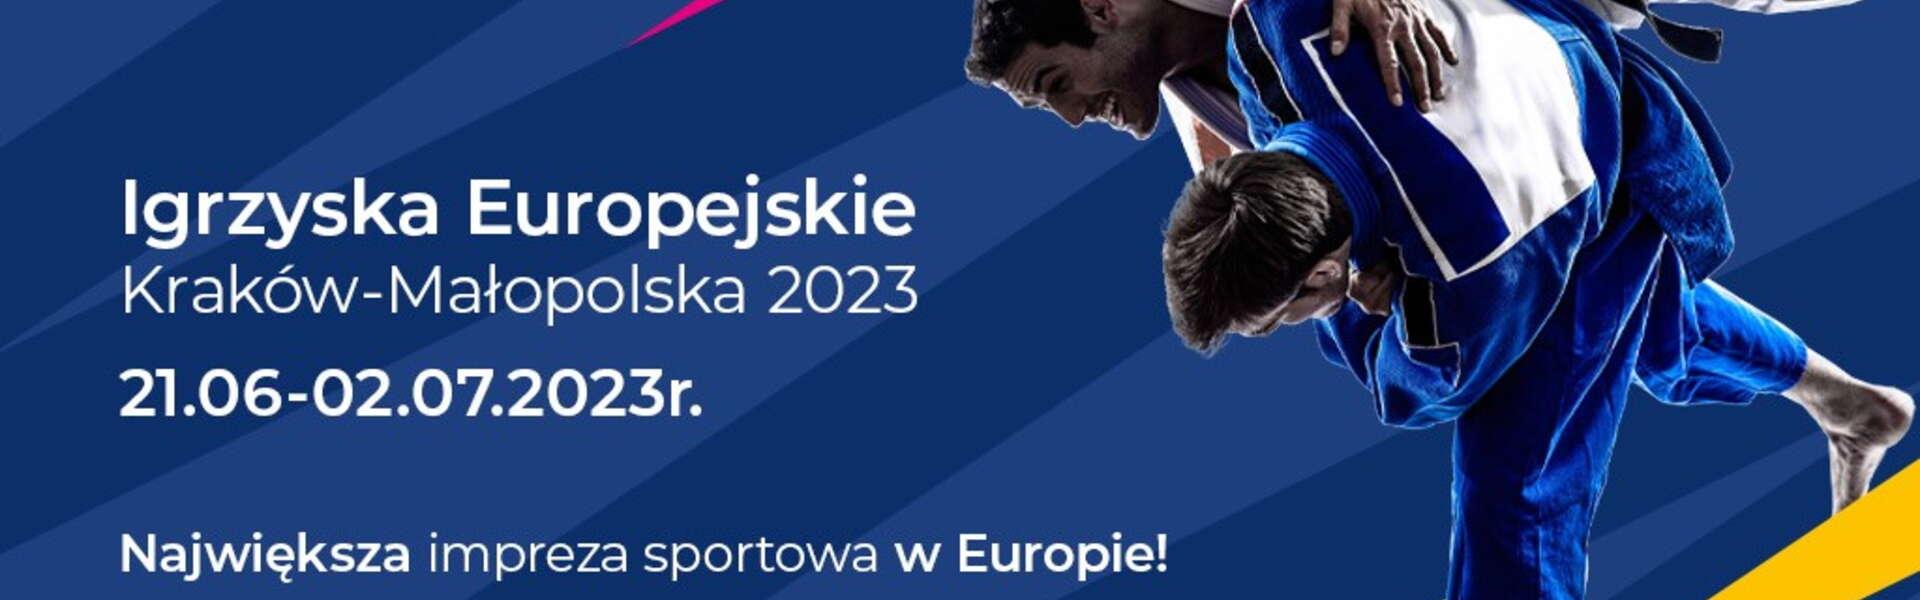 Obrázok: European Games Kraków 2023